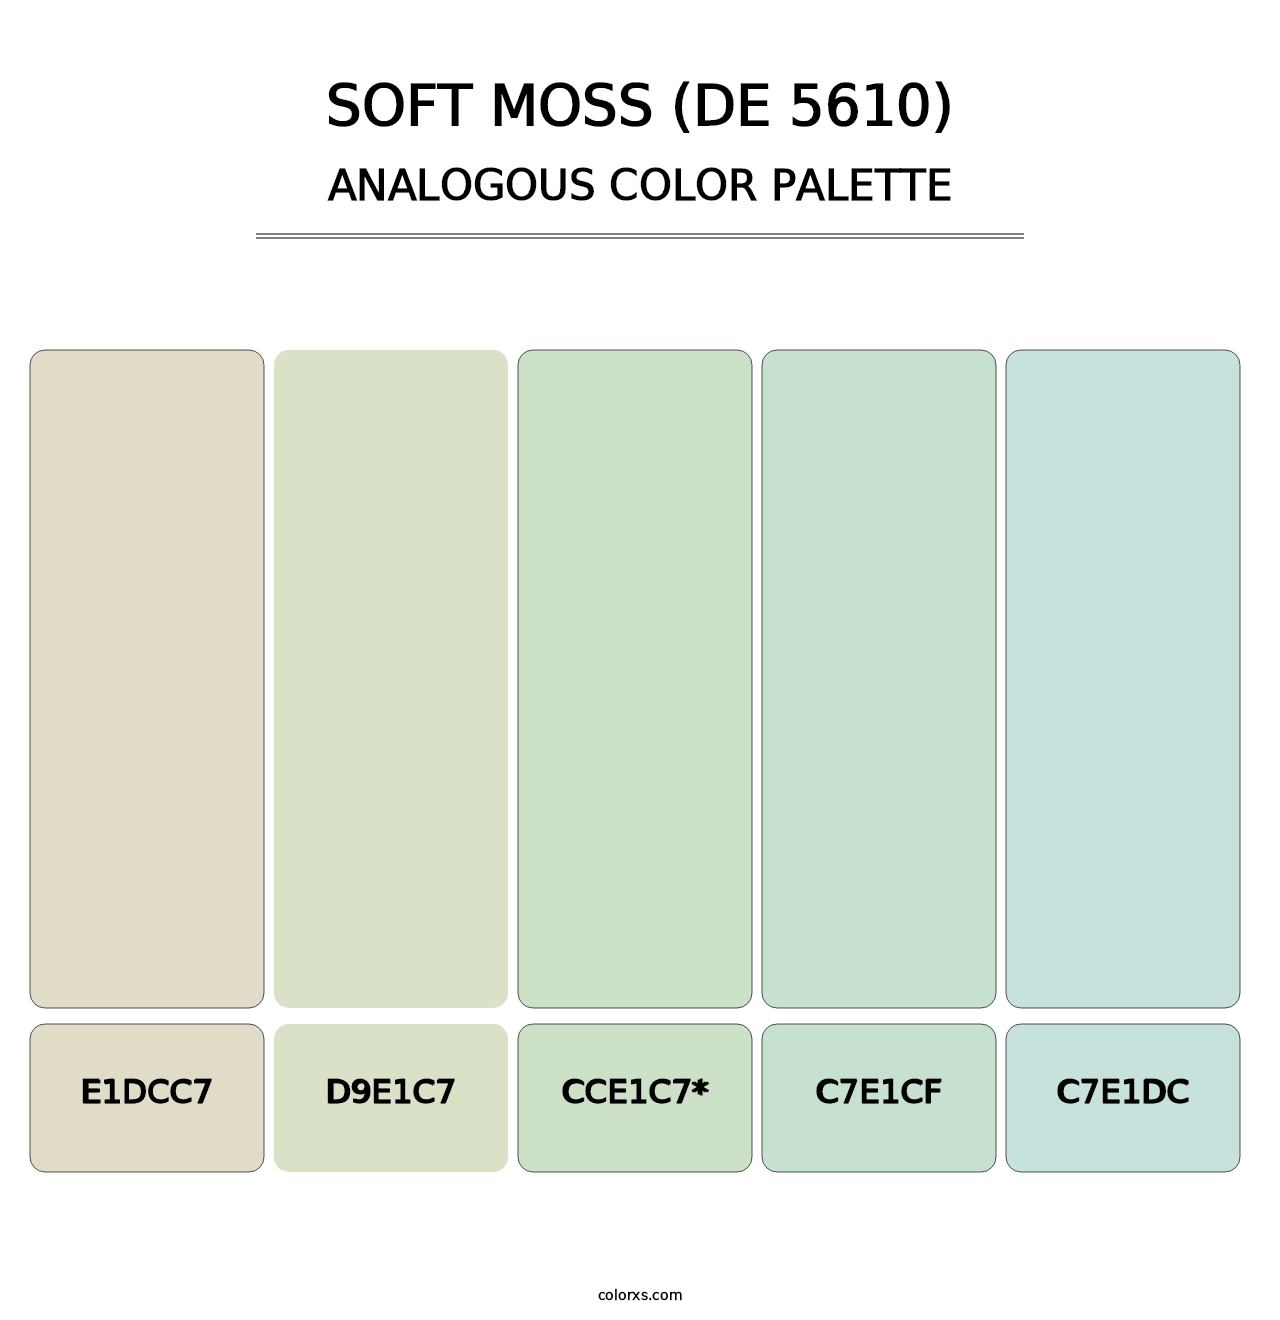 Soft Moss (DE 5610) - Analogous Color Palette